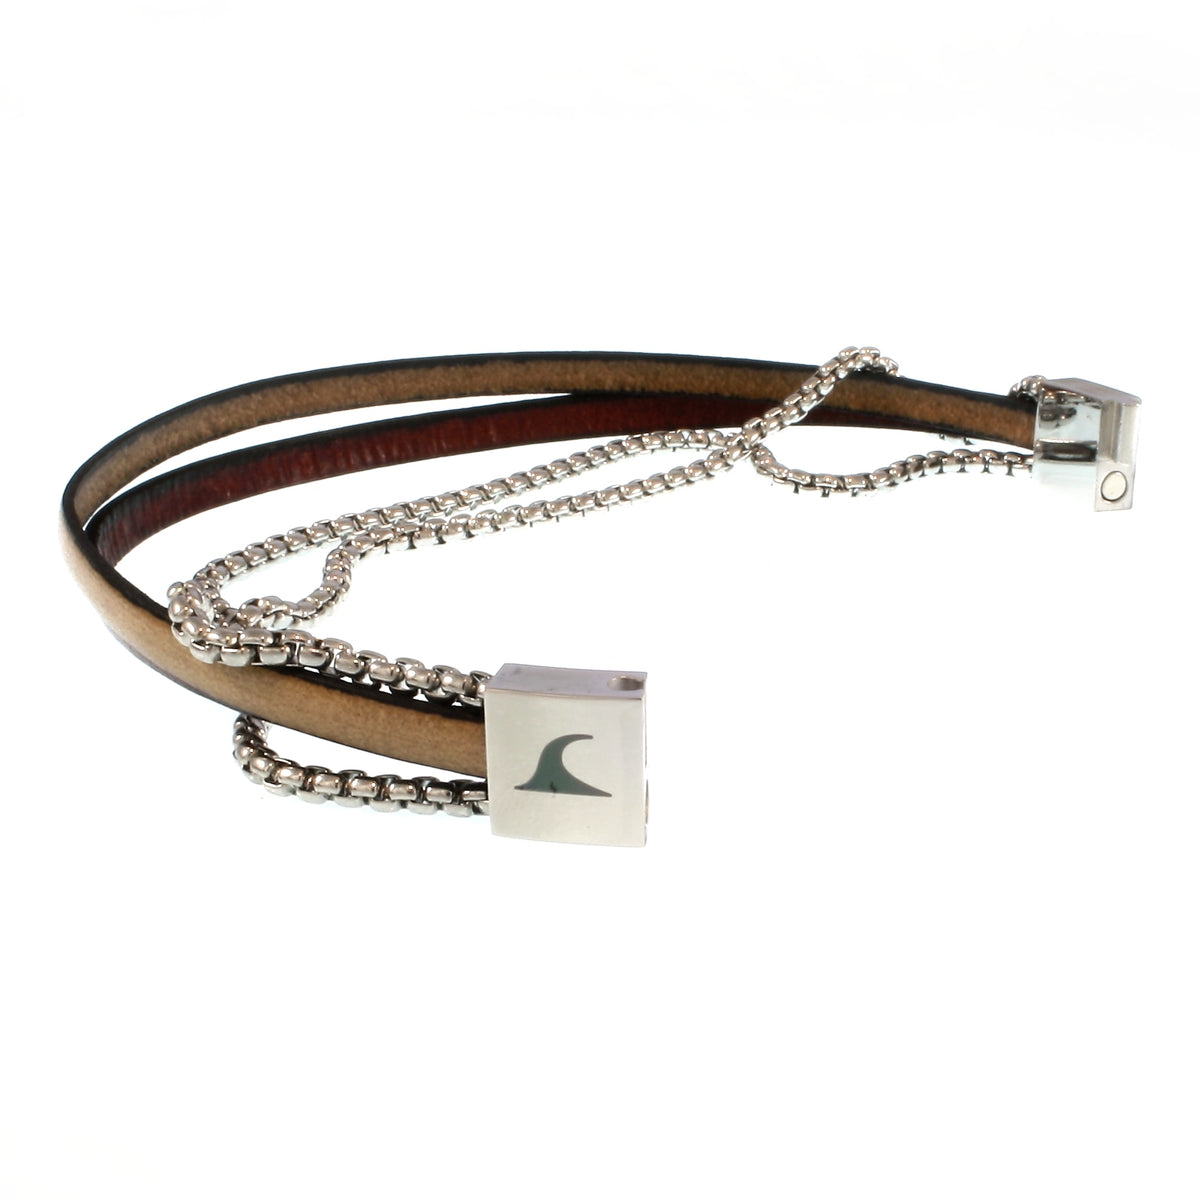 Herren-Leder-Armband-Rex-edelstahlkette-mahagoni-elfenbein-flach-Edelstahlverschluss-offen-wavepirate-shop